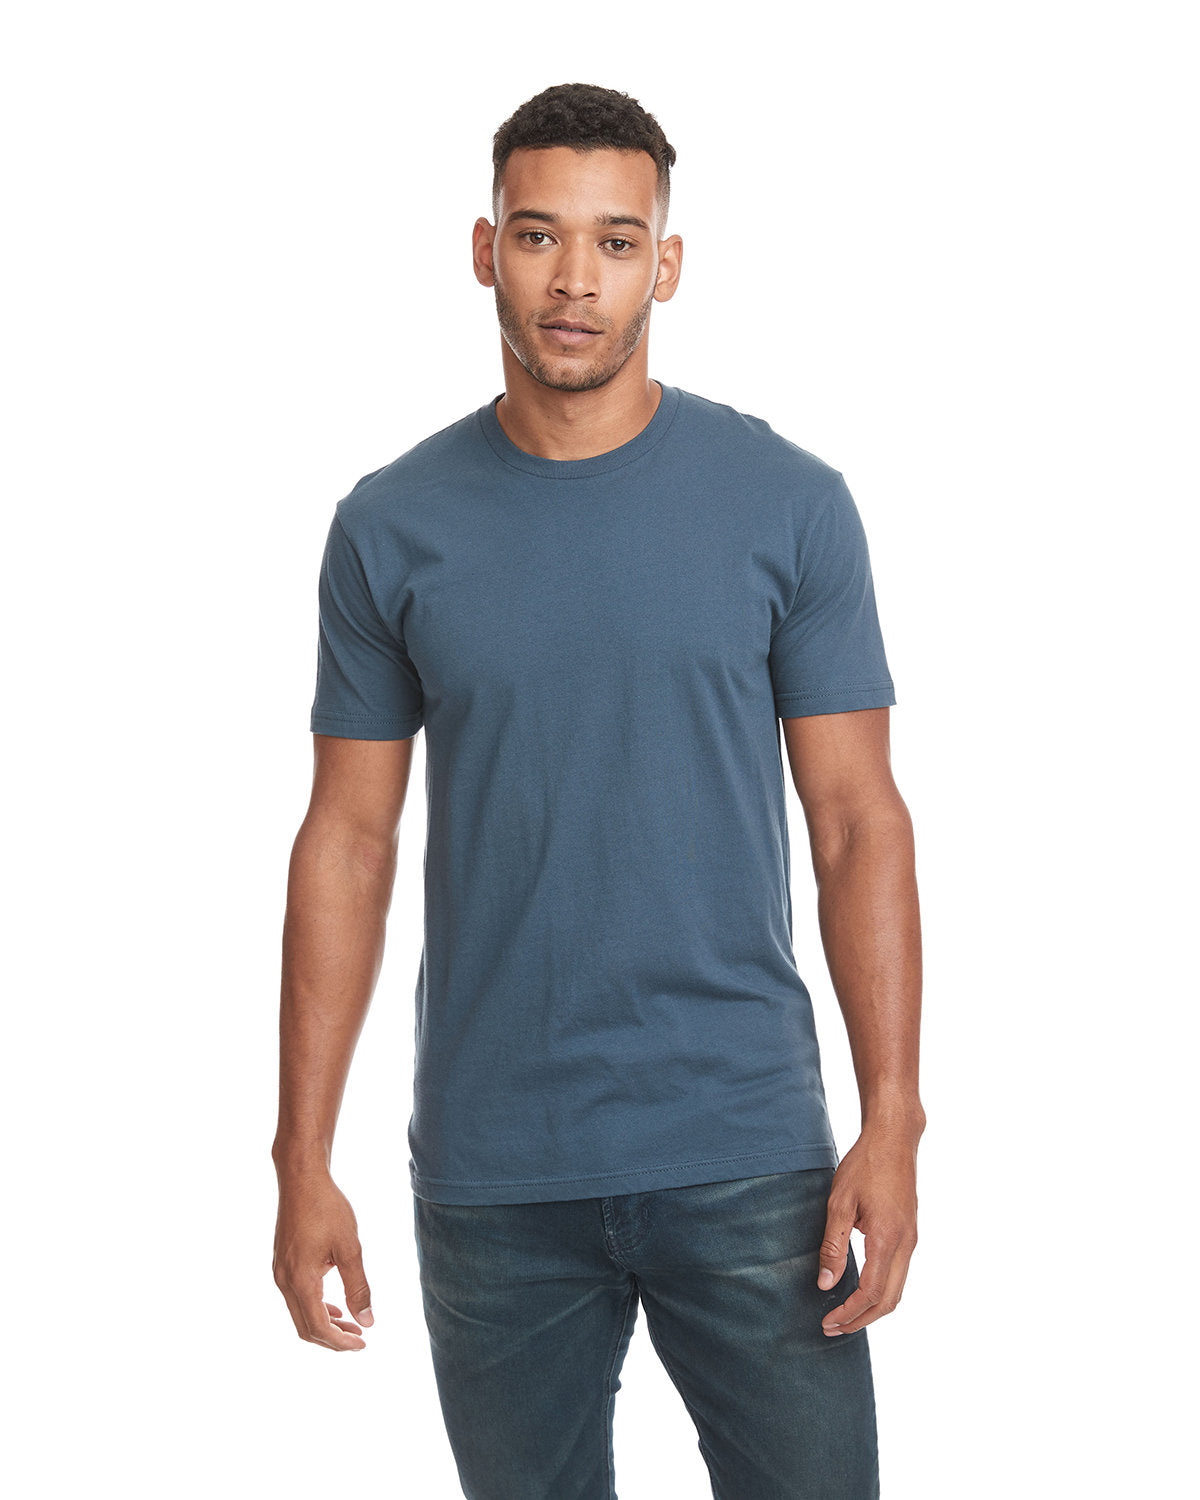 Next Level 3600 Unisex Cotton T Shirt - Black - M